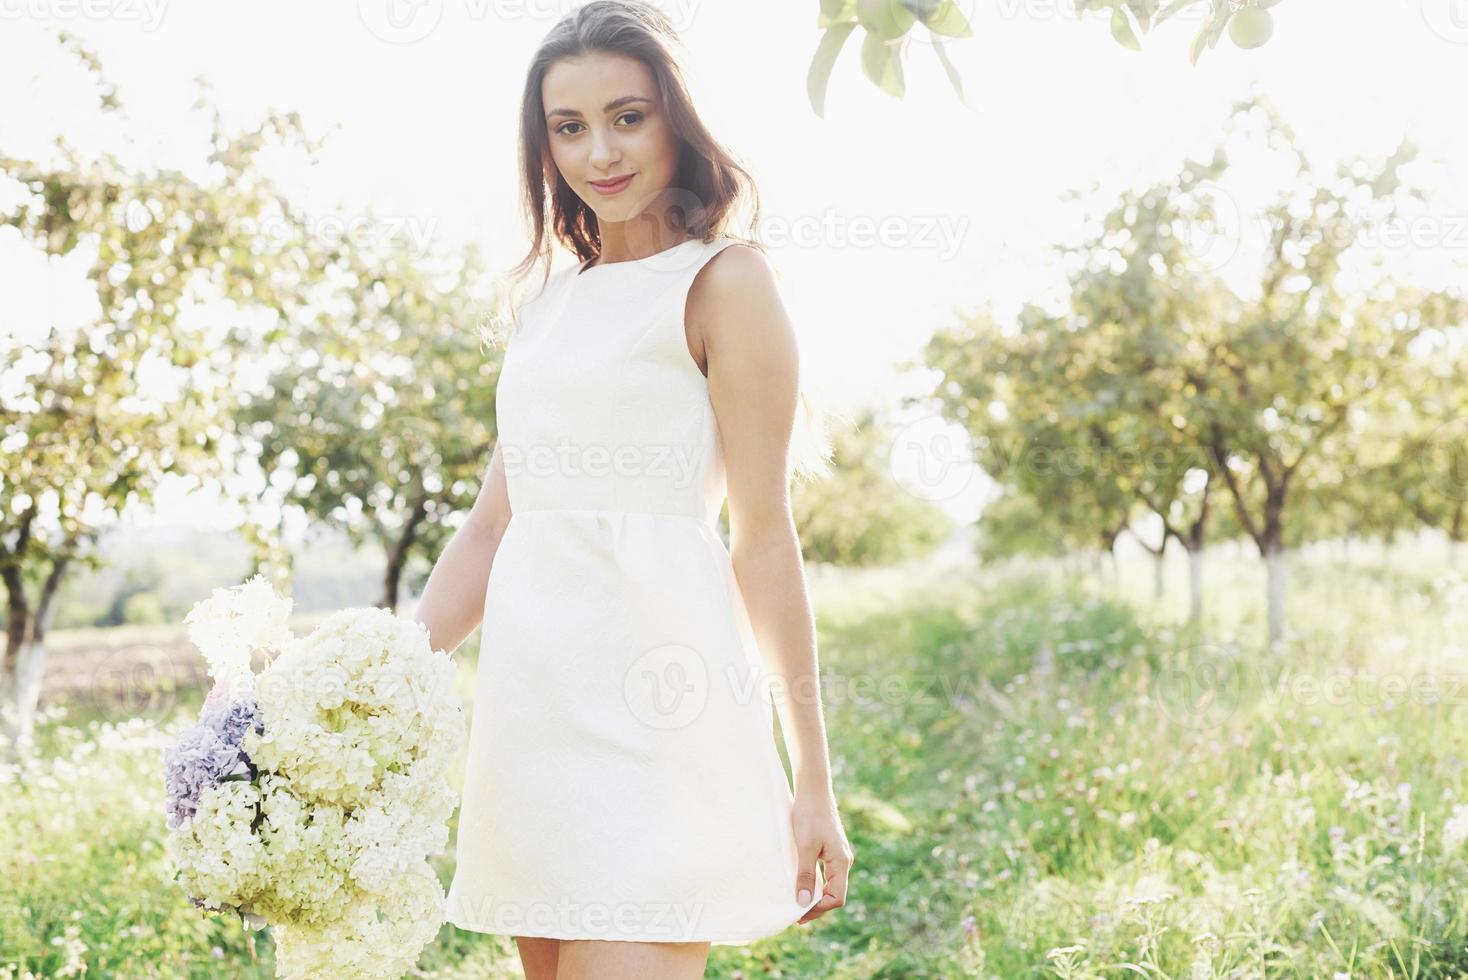 en vacker ung flicka i en vit ljus klänning och en bukett sommarblommor lägger en fin dag i trädgården foto